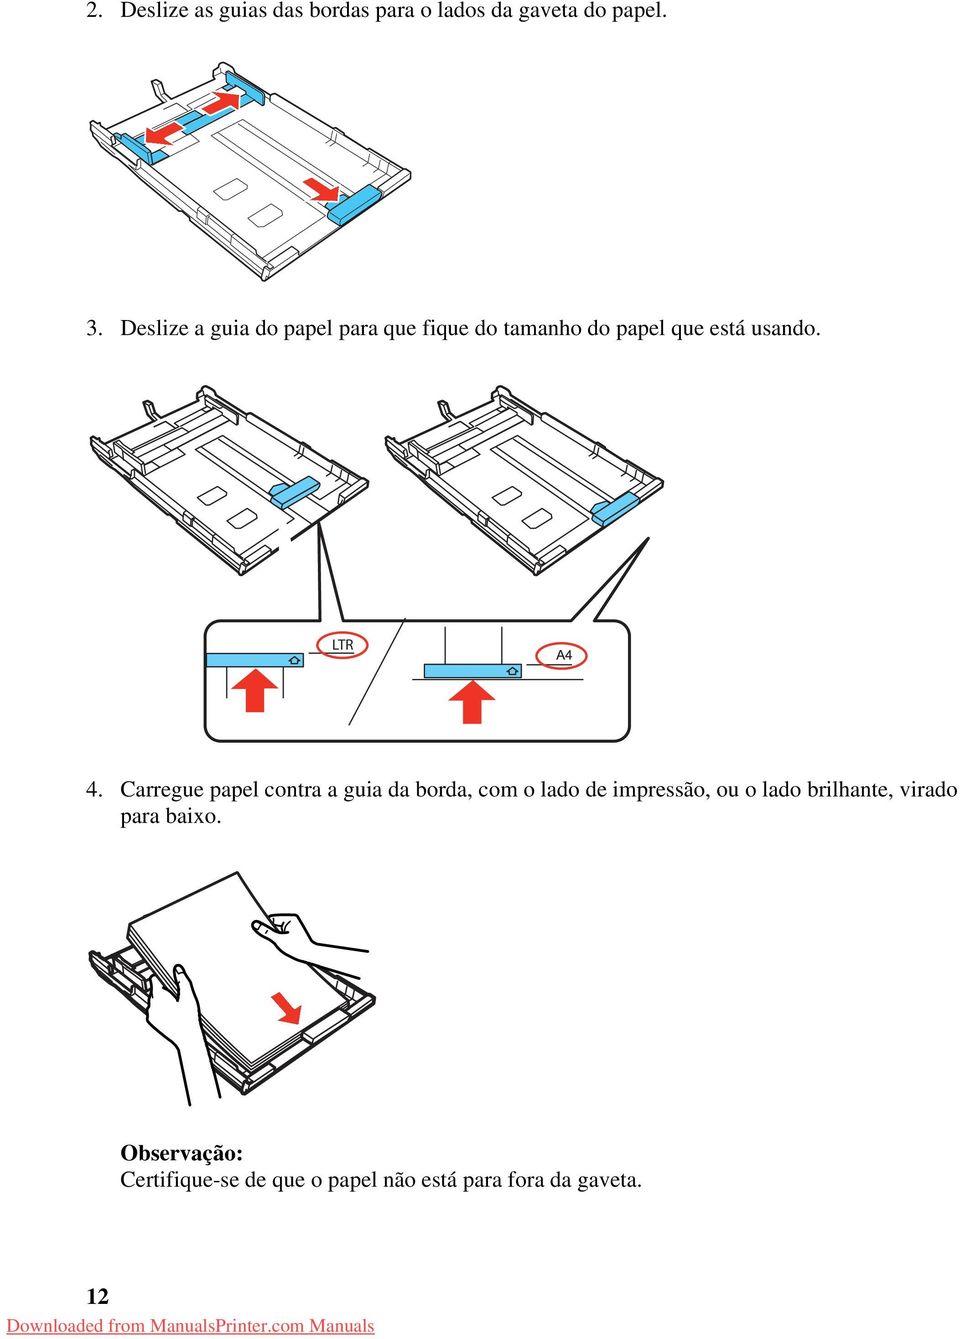 Carregue papel contra a guia da borda, com o lado de impressão, ou o lado